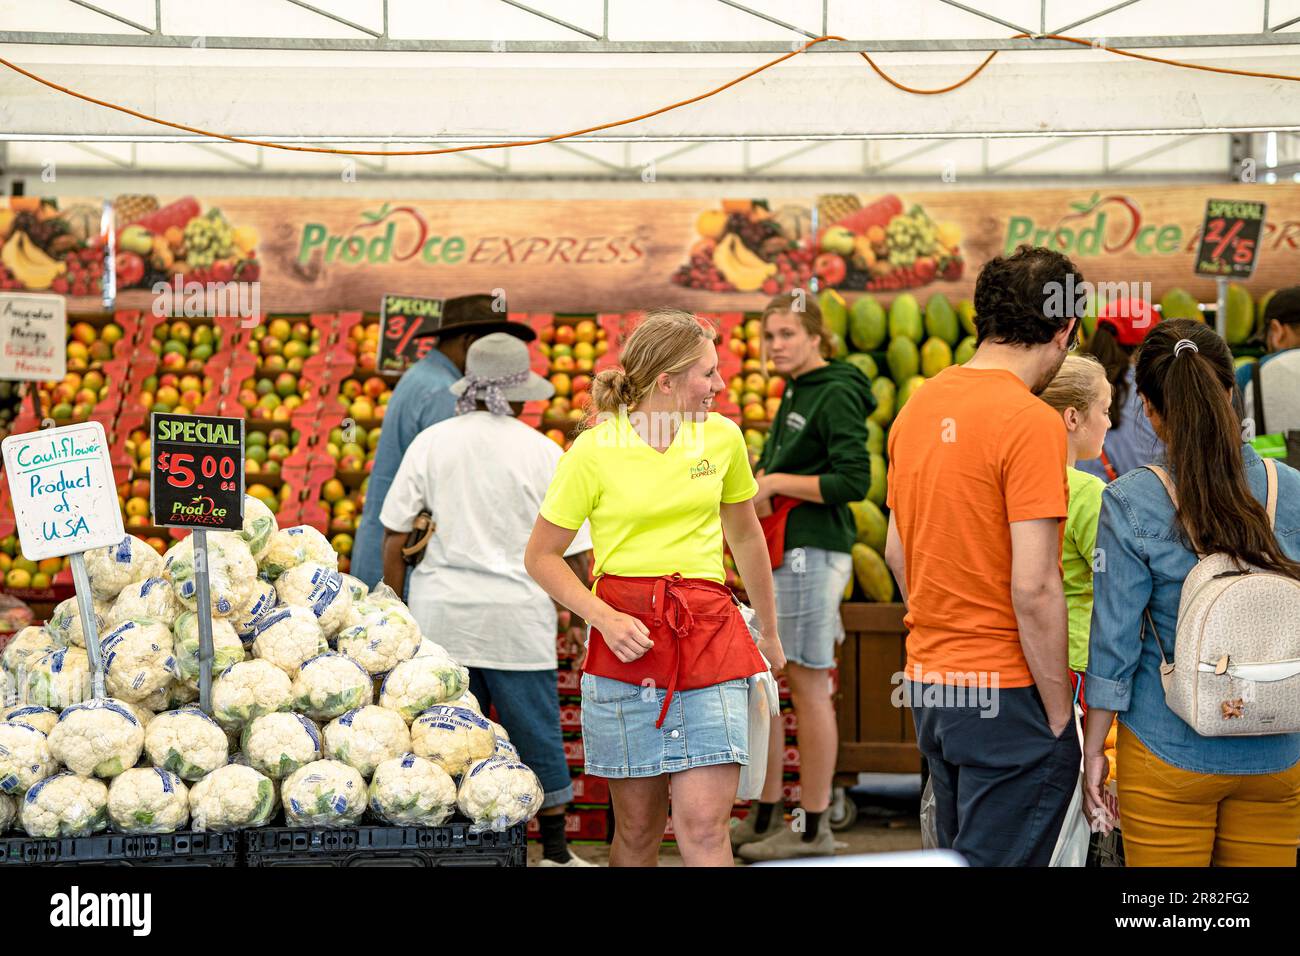 St. Jacobs Farmers Market, vendeurs de fruits et légumes, Ontario, Canada Banque D'Images